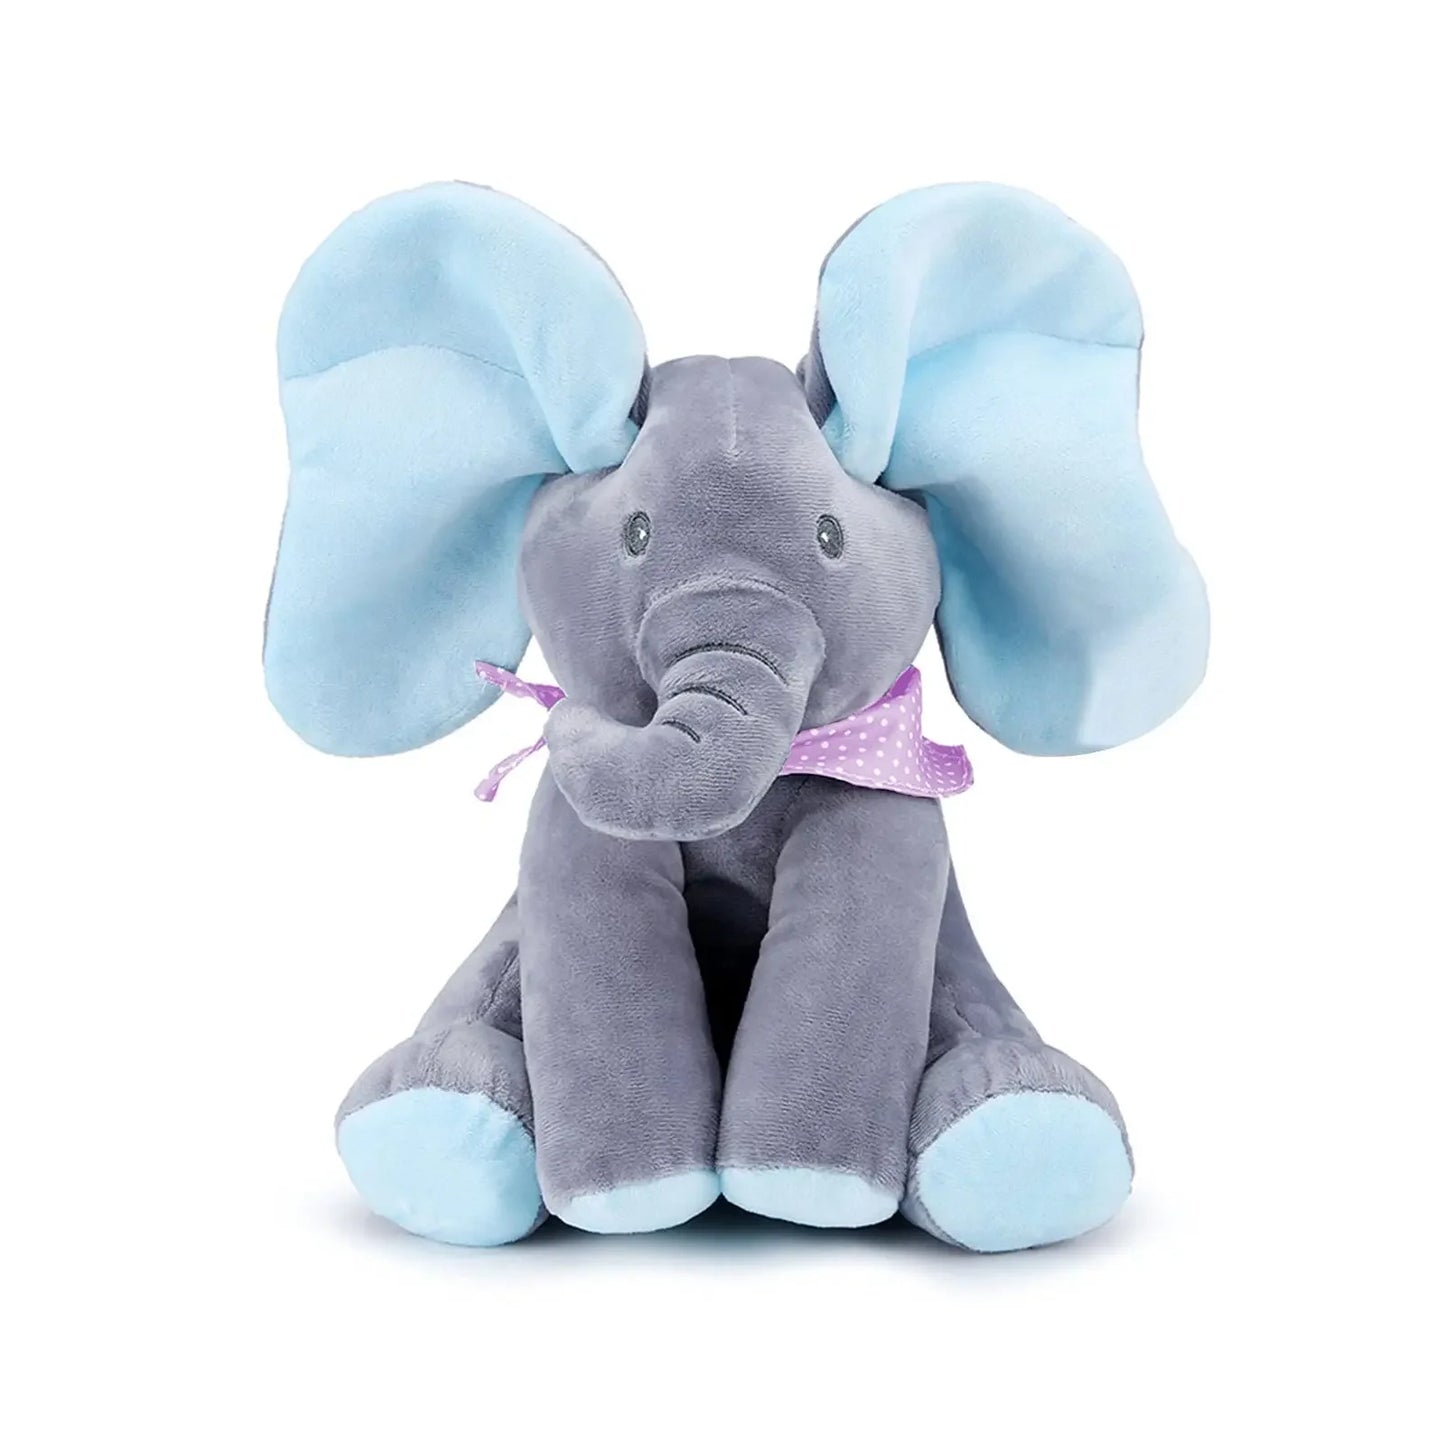 Un jouet éléphant BABY-PREMA doux et moelleux avec des oreilles bleues et un nœud papillon violet à pois, conçu pour les bébés prématurés et assis sur un fond blanc.